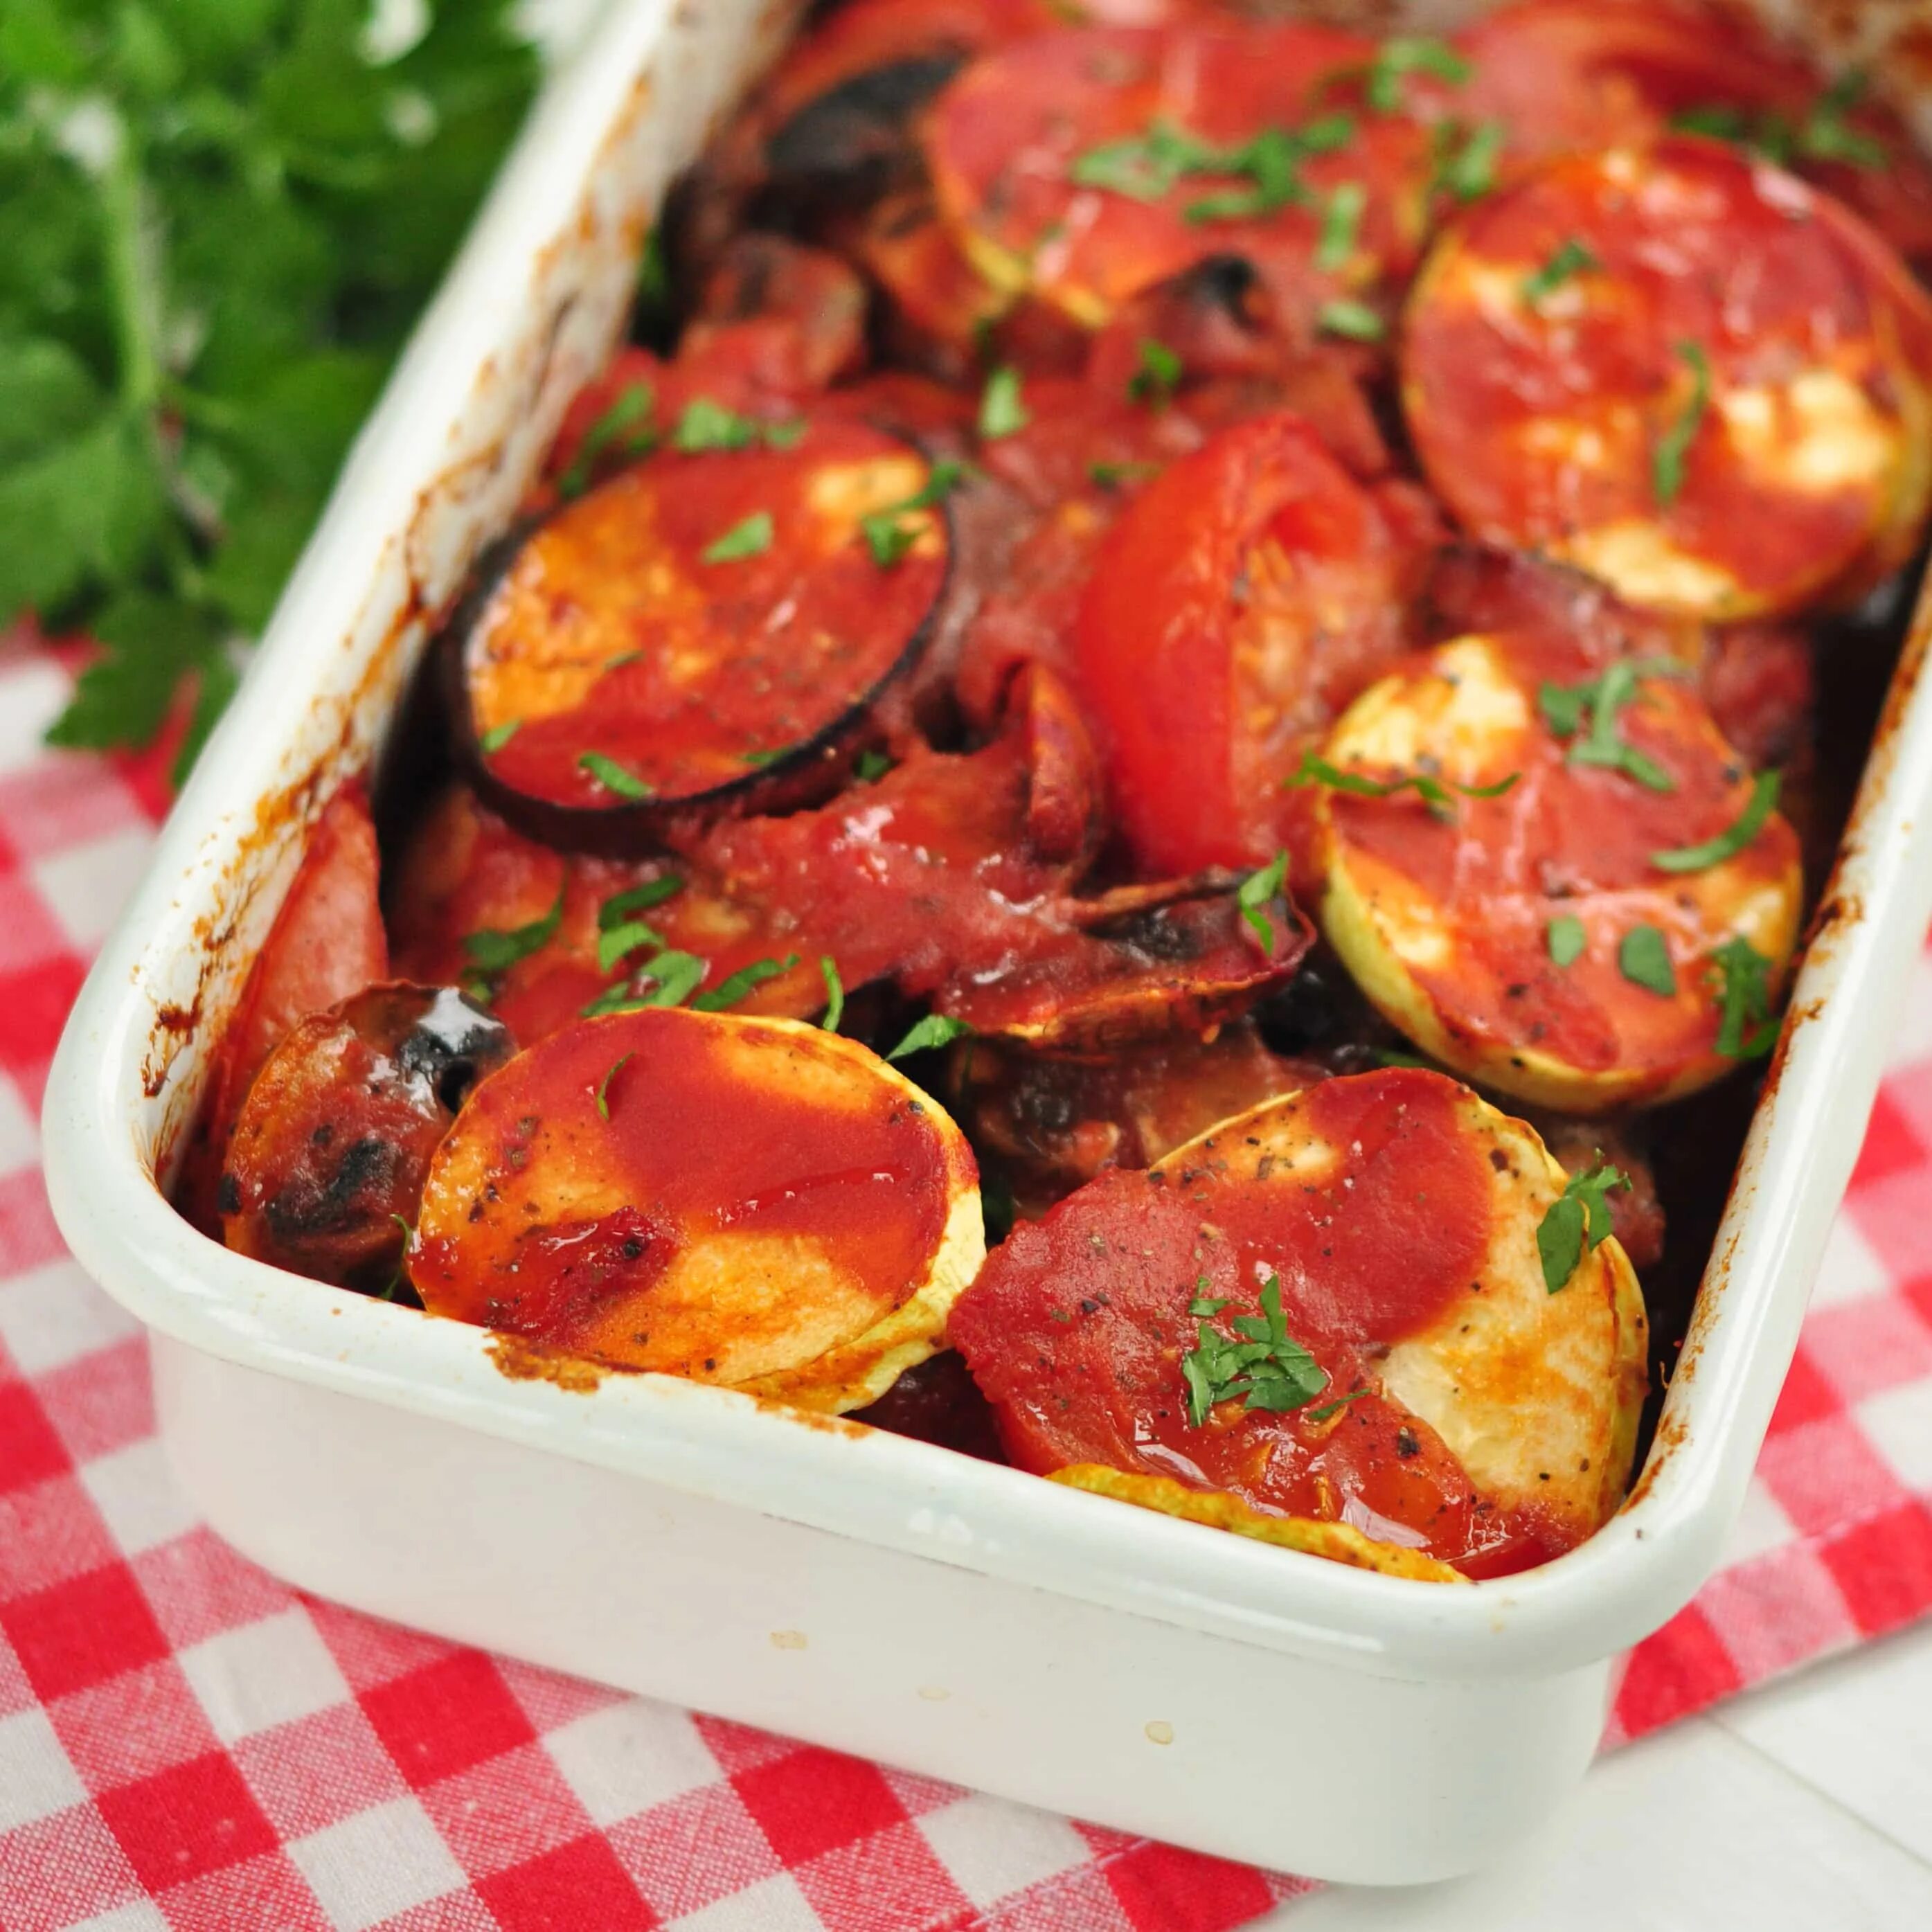 Рецепт овощей в духовке с соусом. Печеные овощи. Запеченные баклажаны с помидорами. Печёные овощи в духовке. Запеченные овощи в томатном соусе.